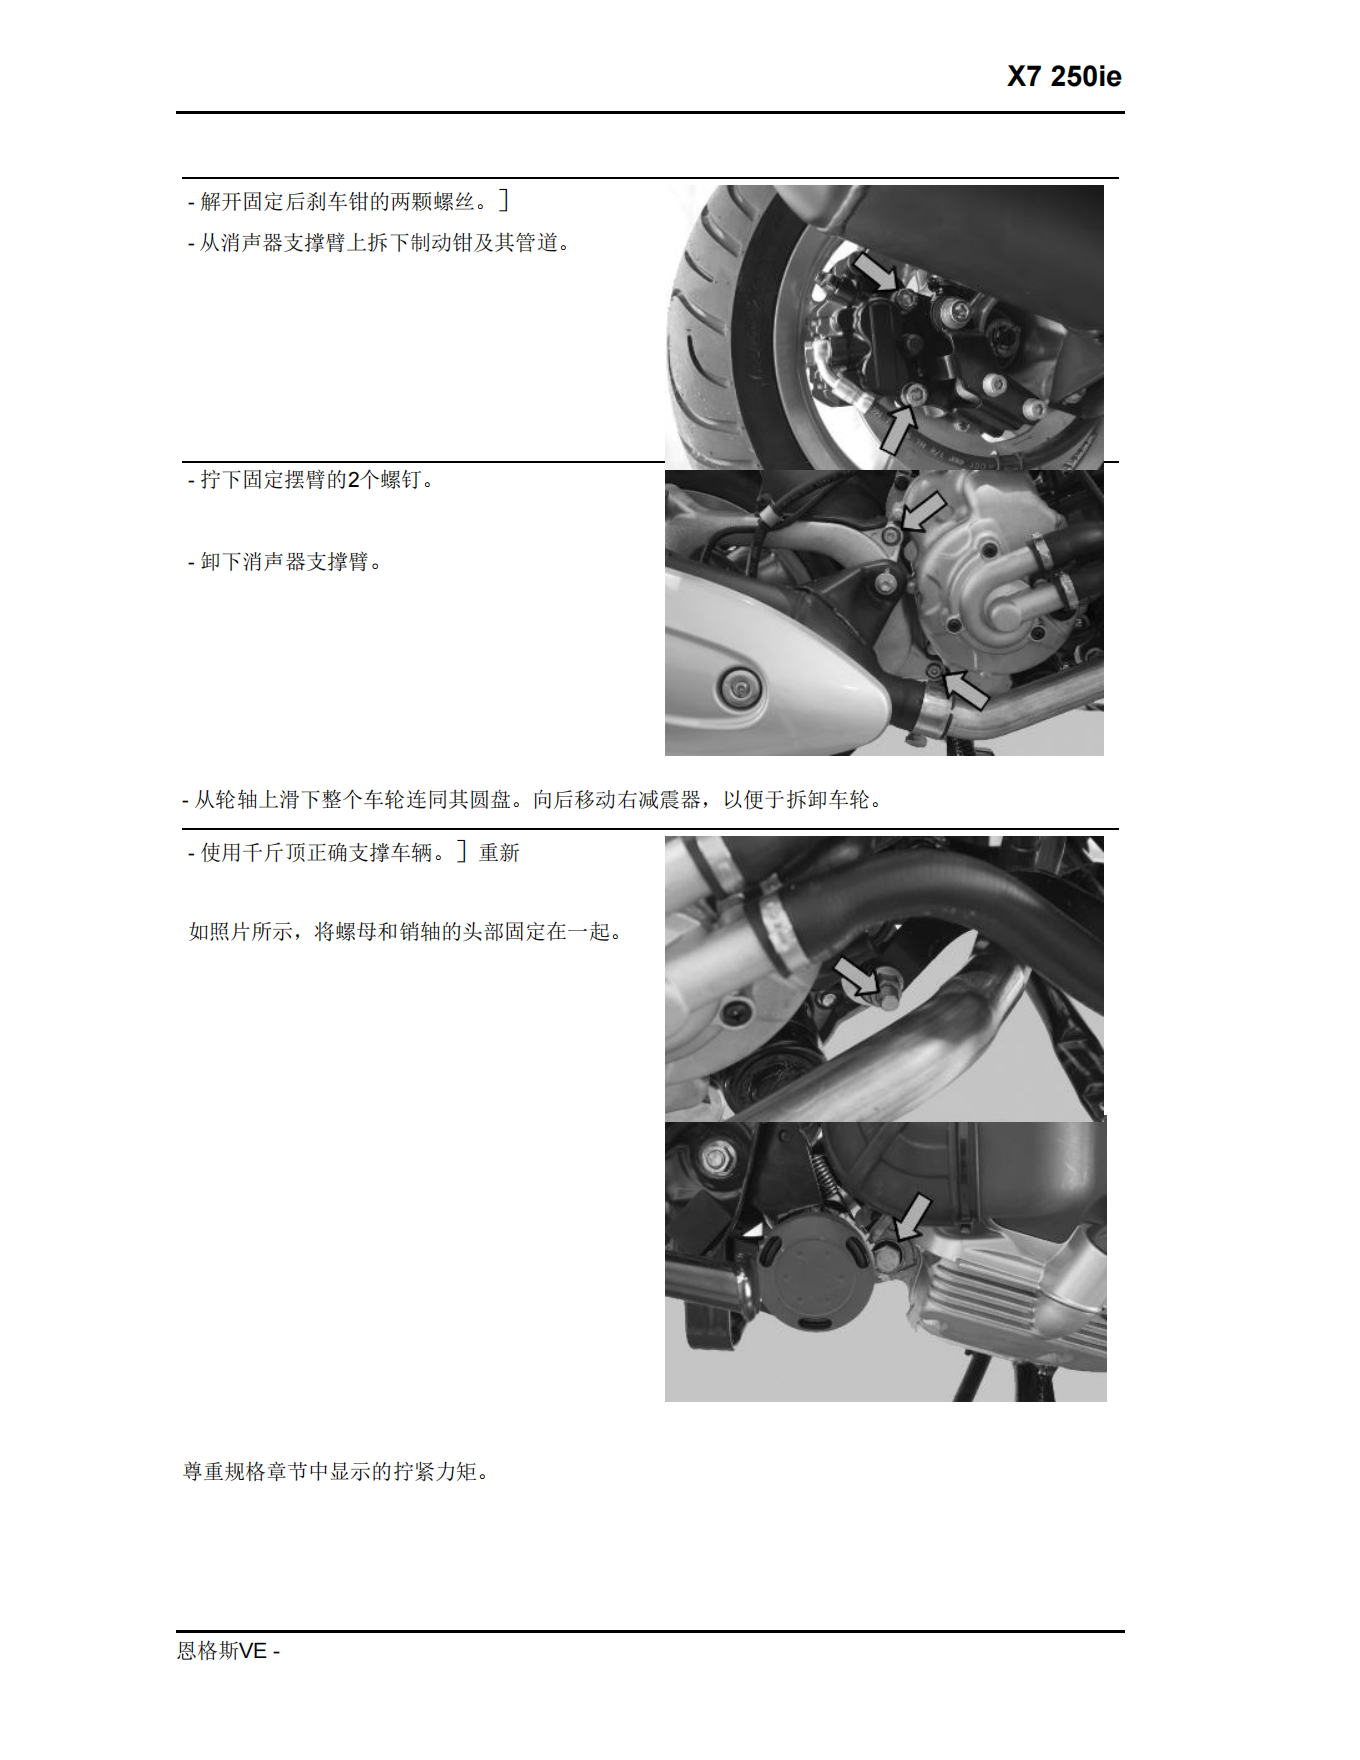 简体中文2007年比亚乔x7维修手册X7 250ie维修手册插图2